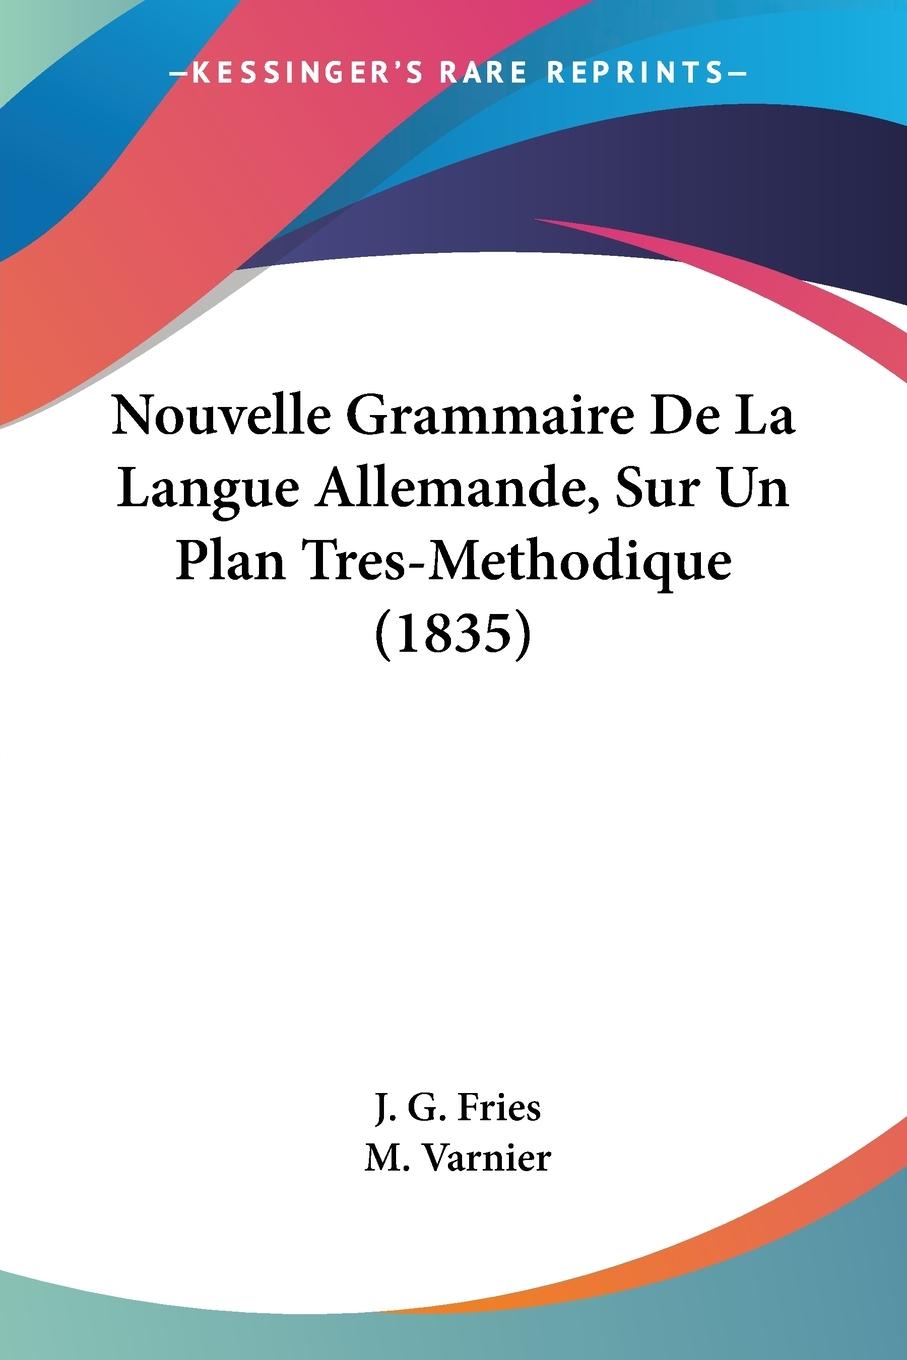 Nouvelle Grammaire De La Langue Allemande, Sur Un Plan Tres-Methodique (1835) - Fries, J. G. Varnier, M.